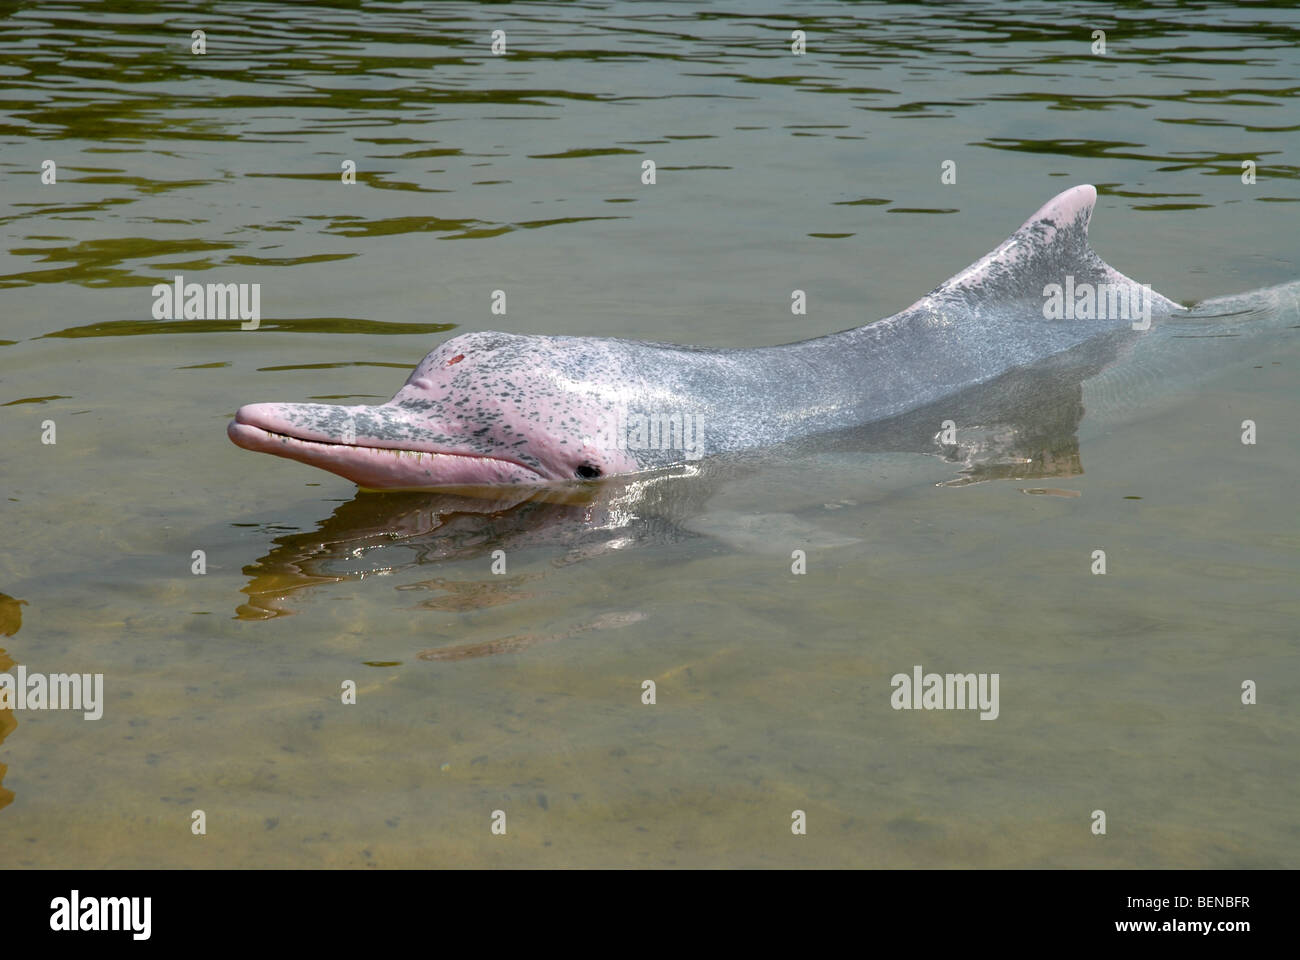 Dauphin à bosse de l'Indo-Pacifique, ou rose, Dolphin Dolphin Lagoon, l'île de Sentosa, Singapour Banque D'Images